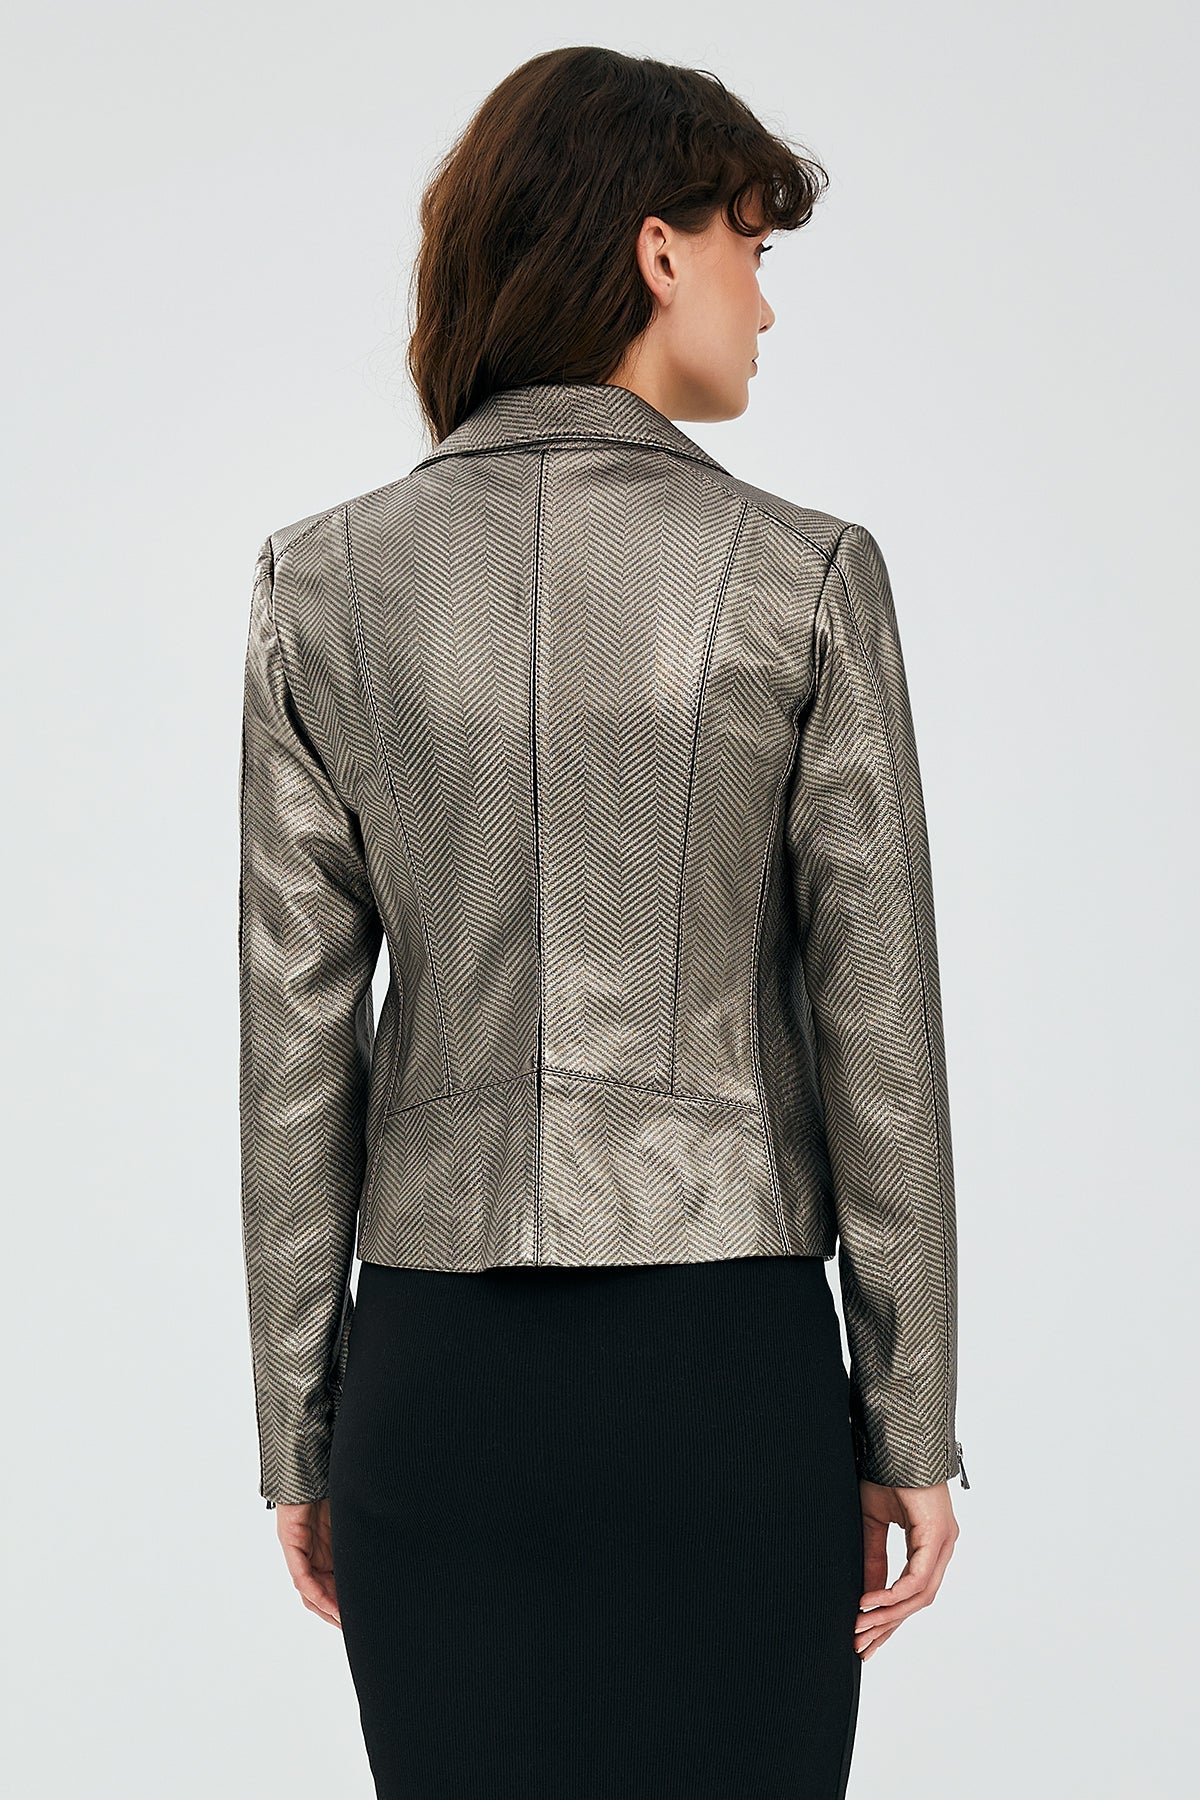 Kiara Silver Women's Biker Leather Jacket